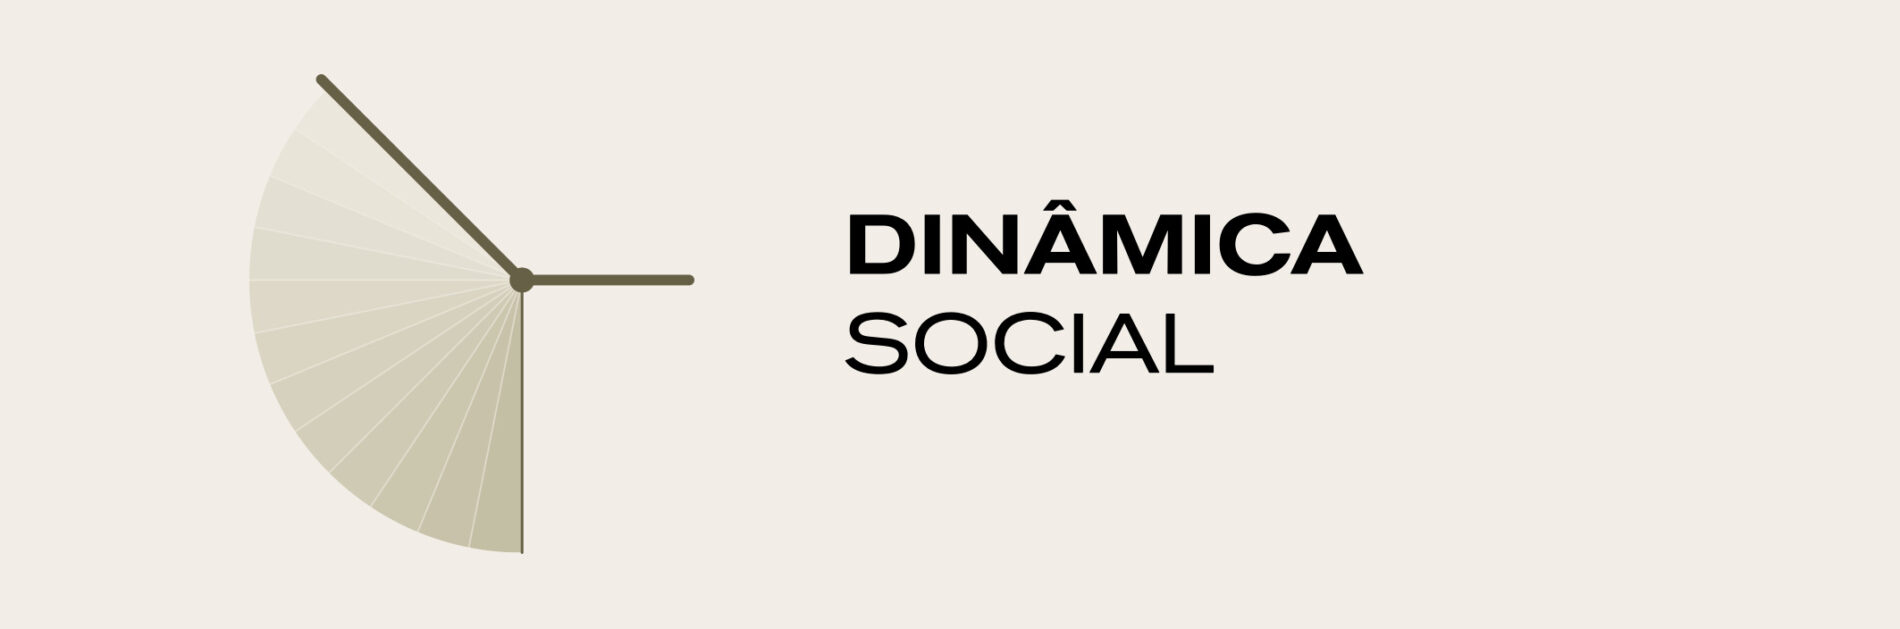 Dinâmica social do método Biomma em branding